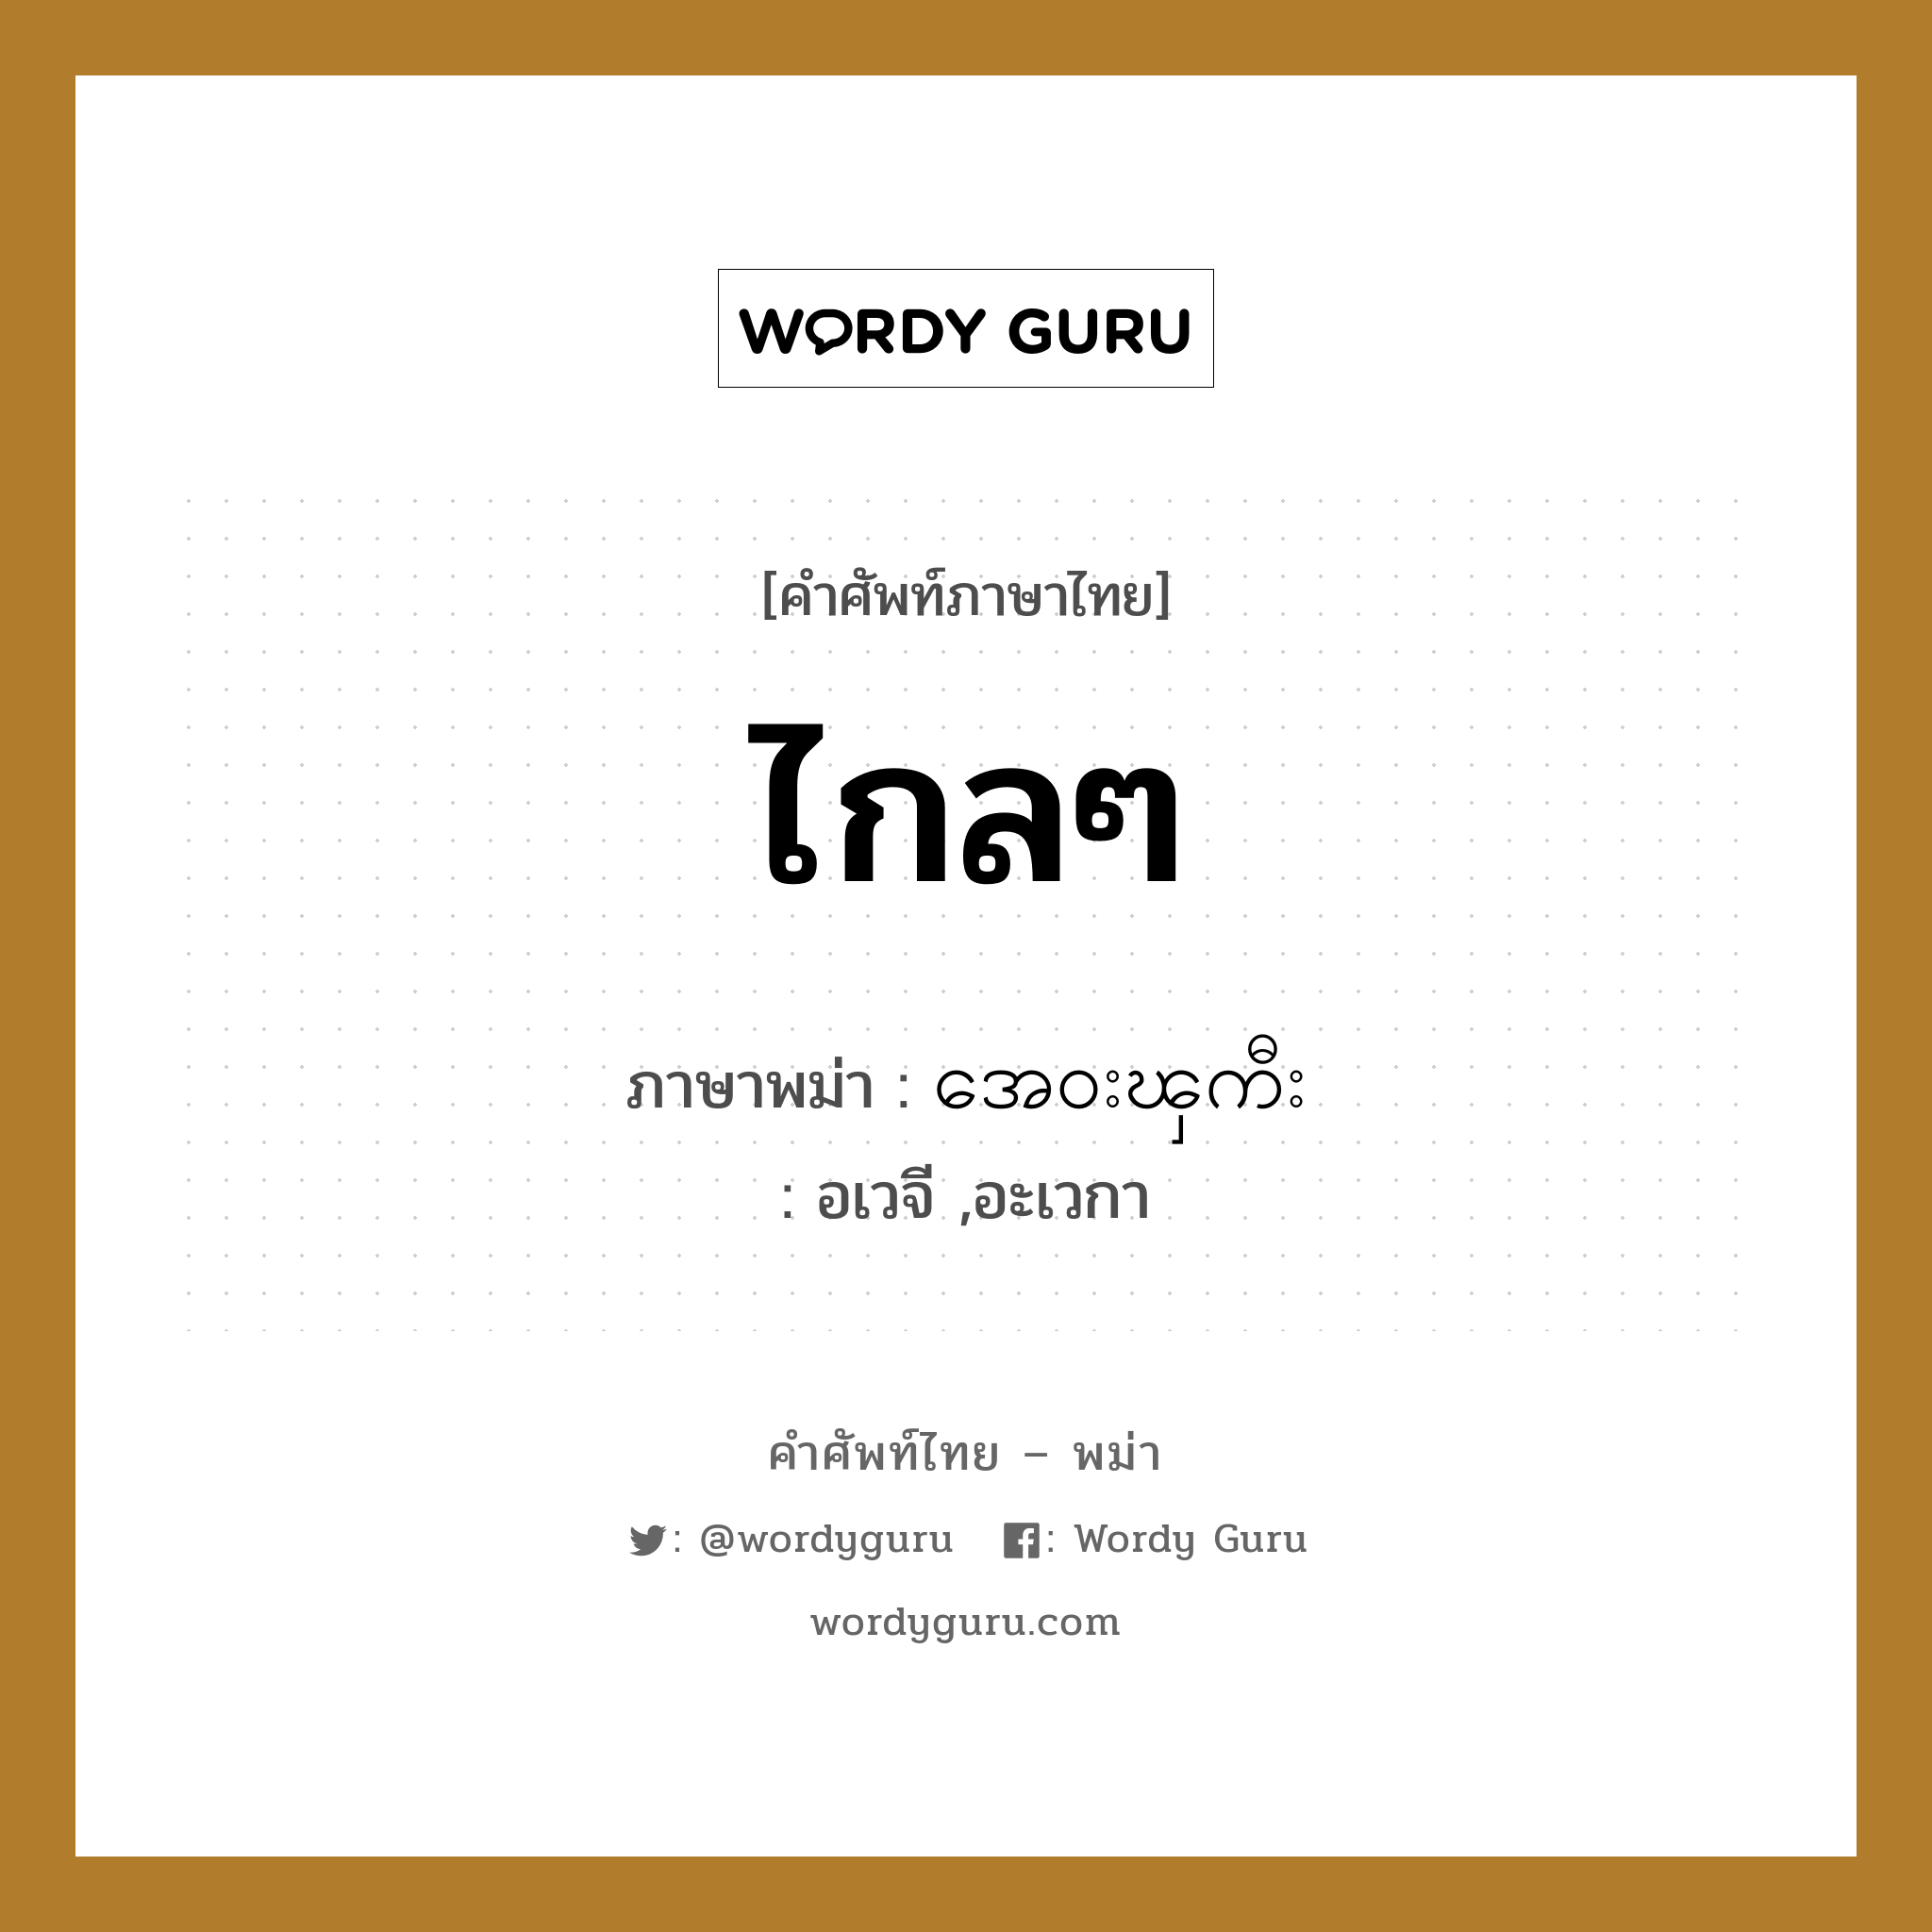 ไกลๆ แปลว่า? คำศัพท์ในกลุ่มประเภท ทั่วไป, คำศัพท์ภาษาไทย - พม่า ไกลๆ ภาษาพม่า အေ၀းၾကီး หมวด ทั่วไป อเวจี ,อะเวกา หมวด ทั่วไป